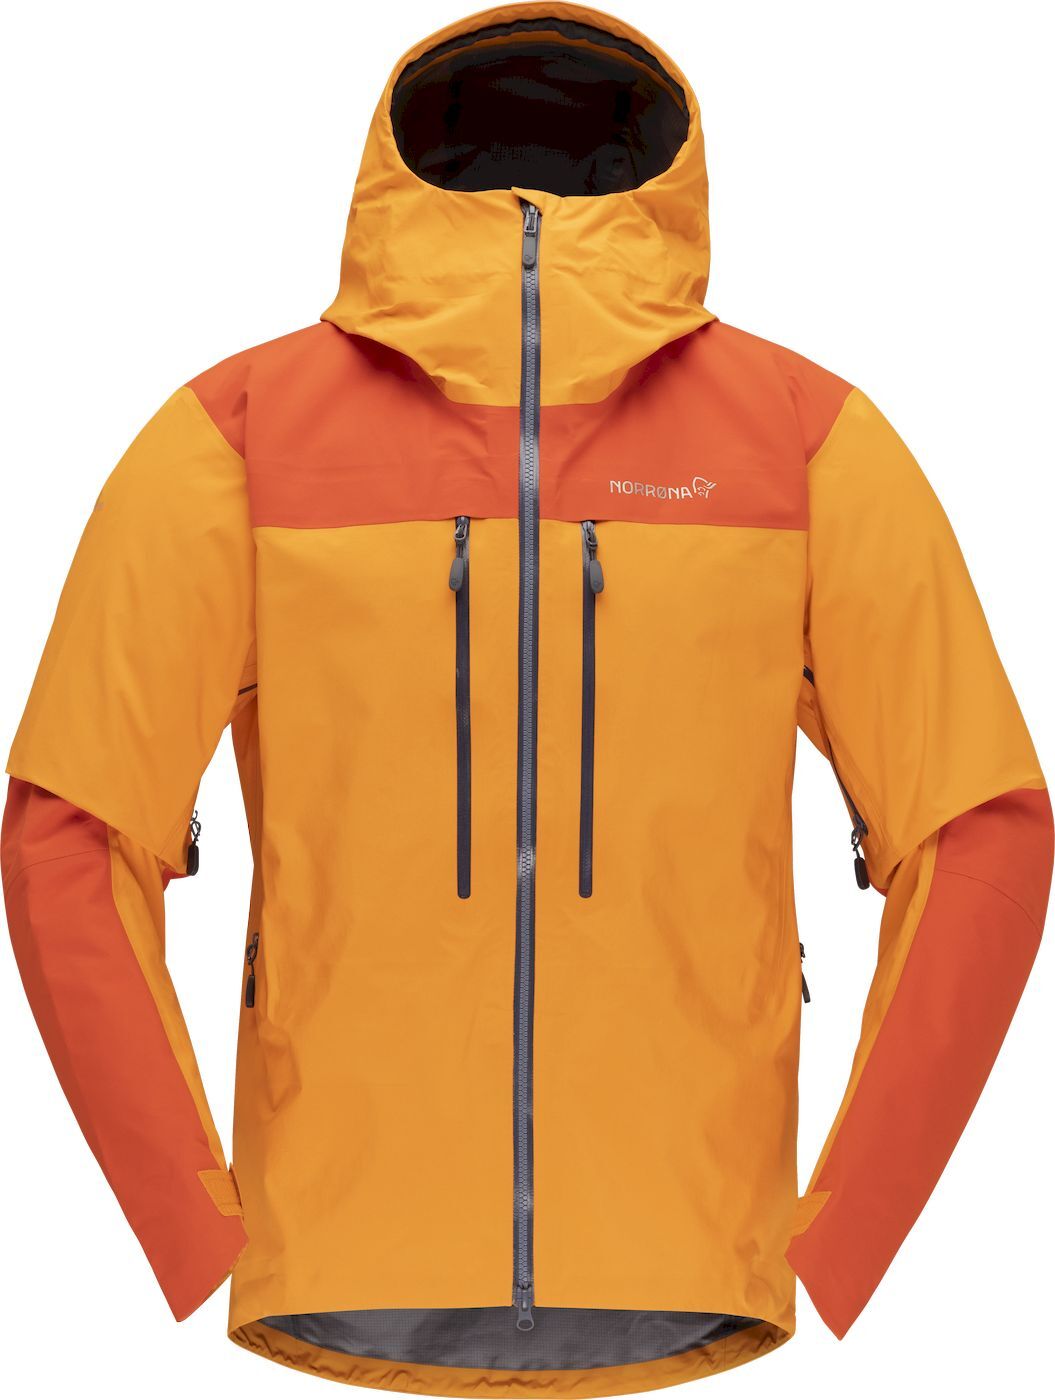 Norrona Trollveggen Gore-Tex Pro Light Jacket - Waterproof jacket - Men's